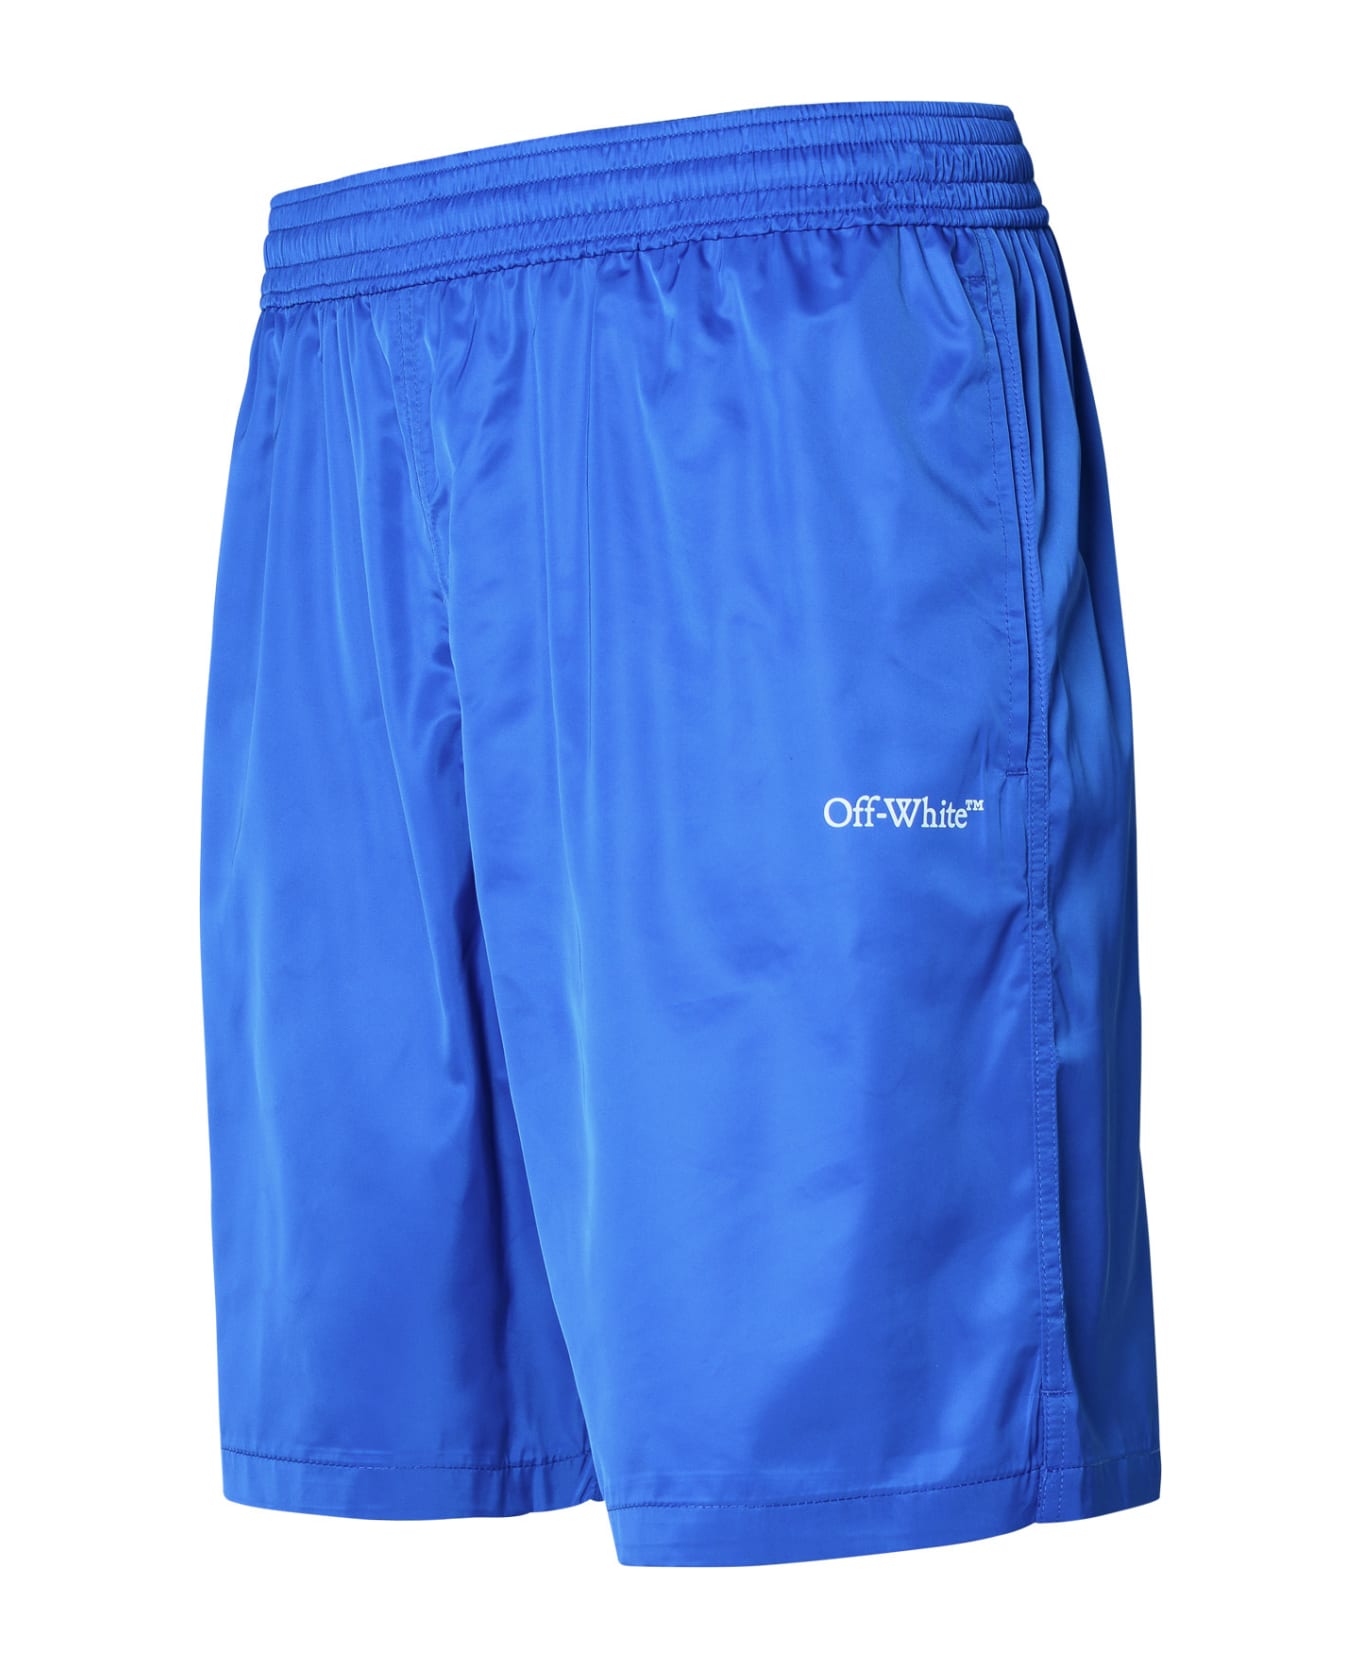 Off-White Swim Shorts - Blue